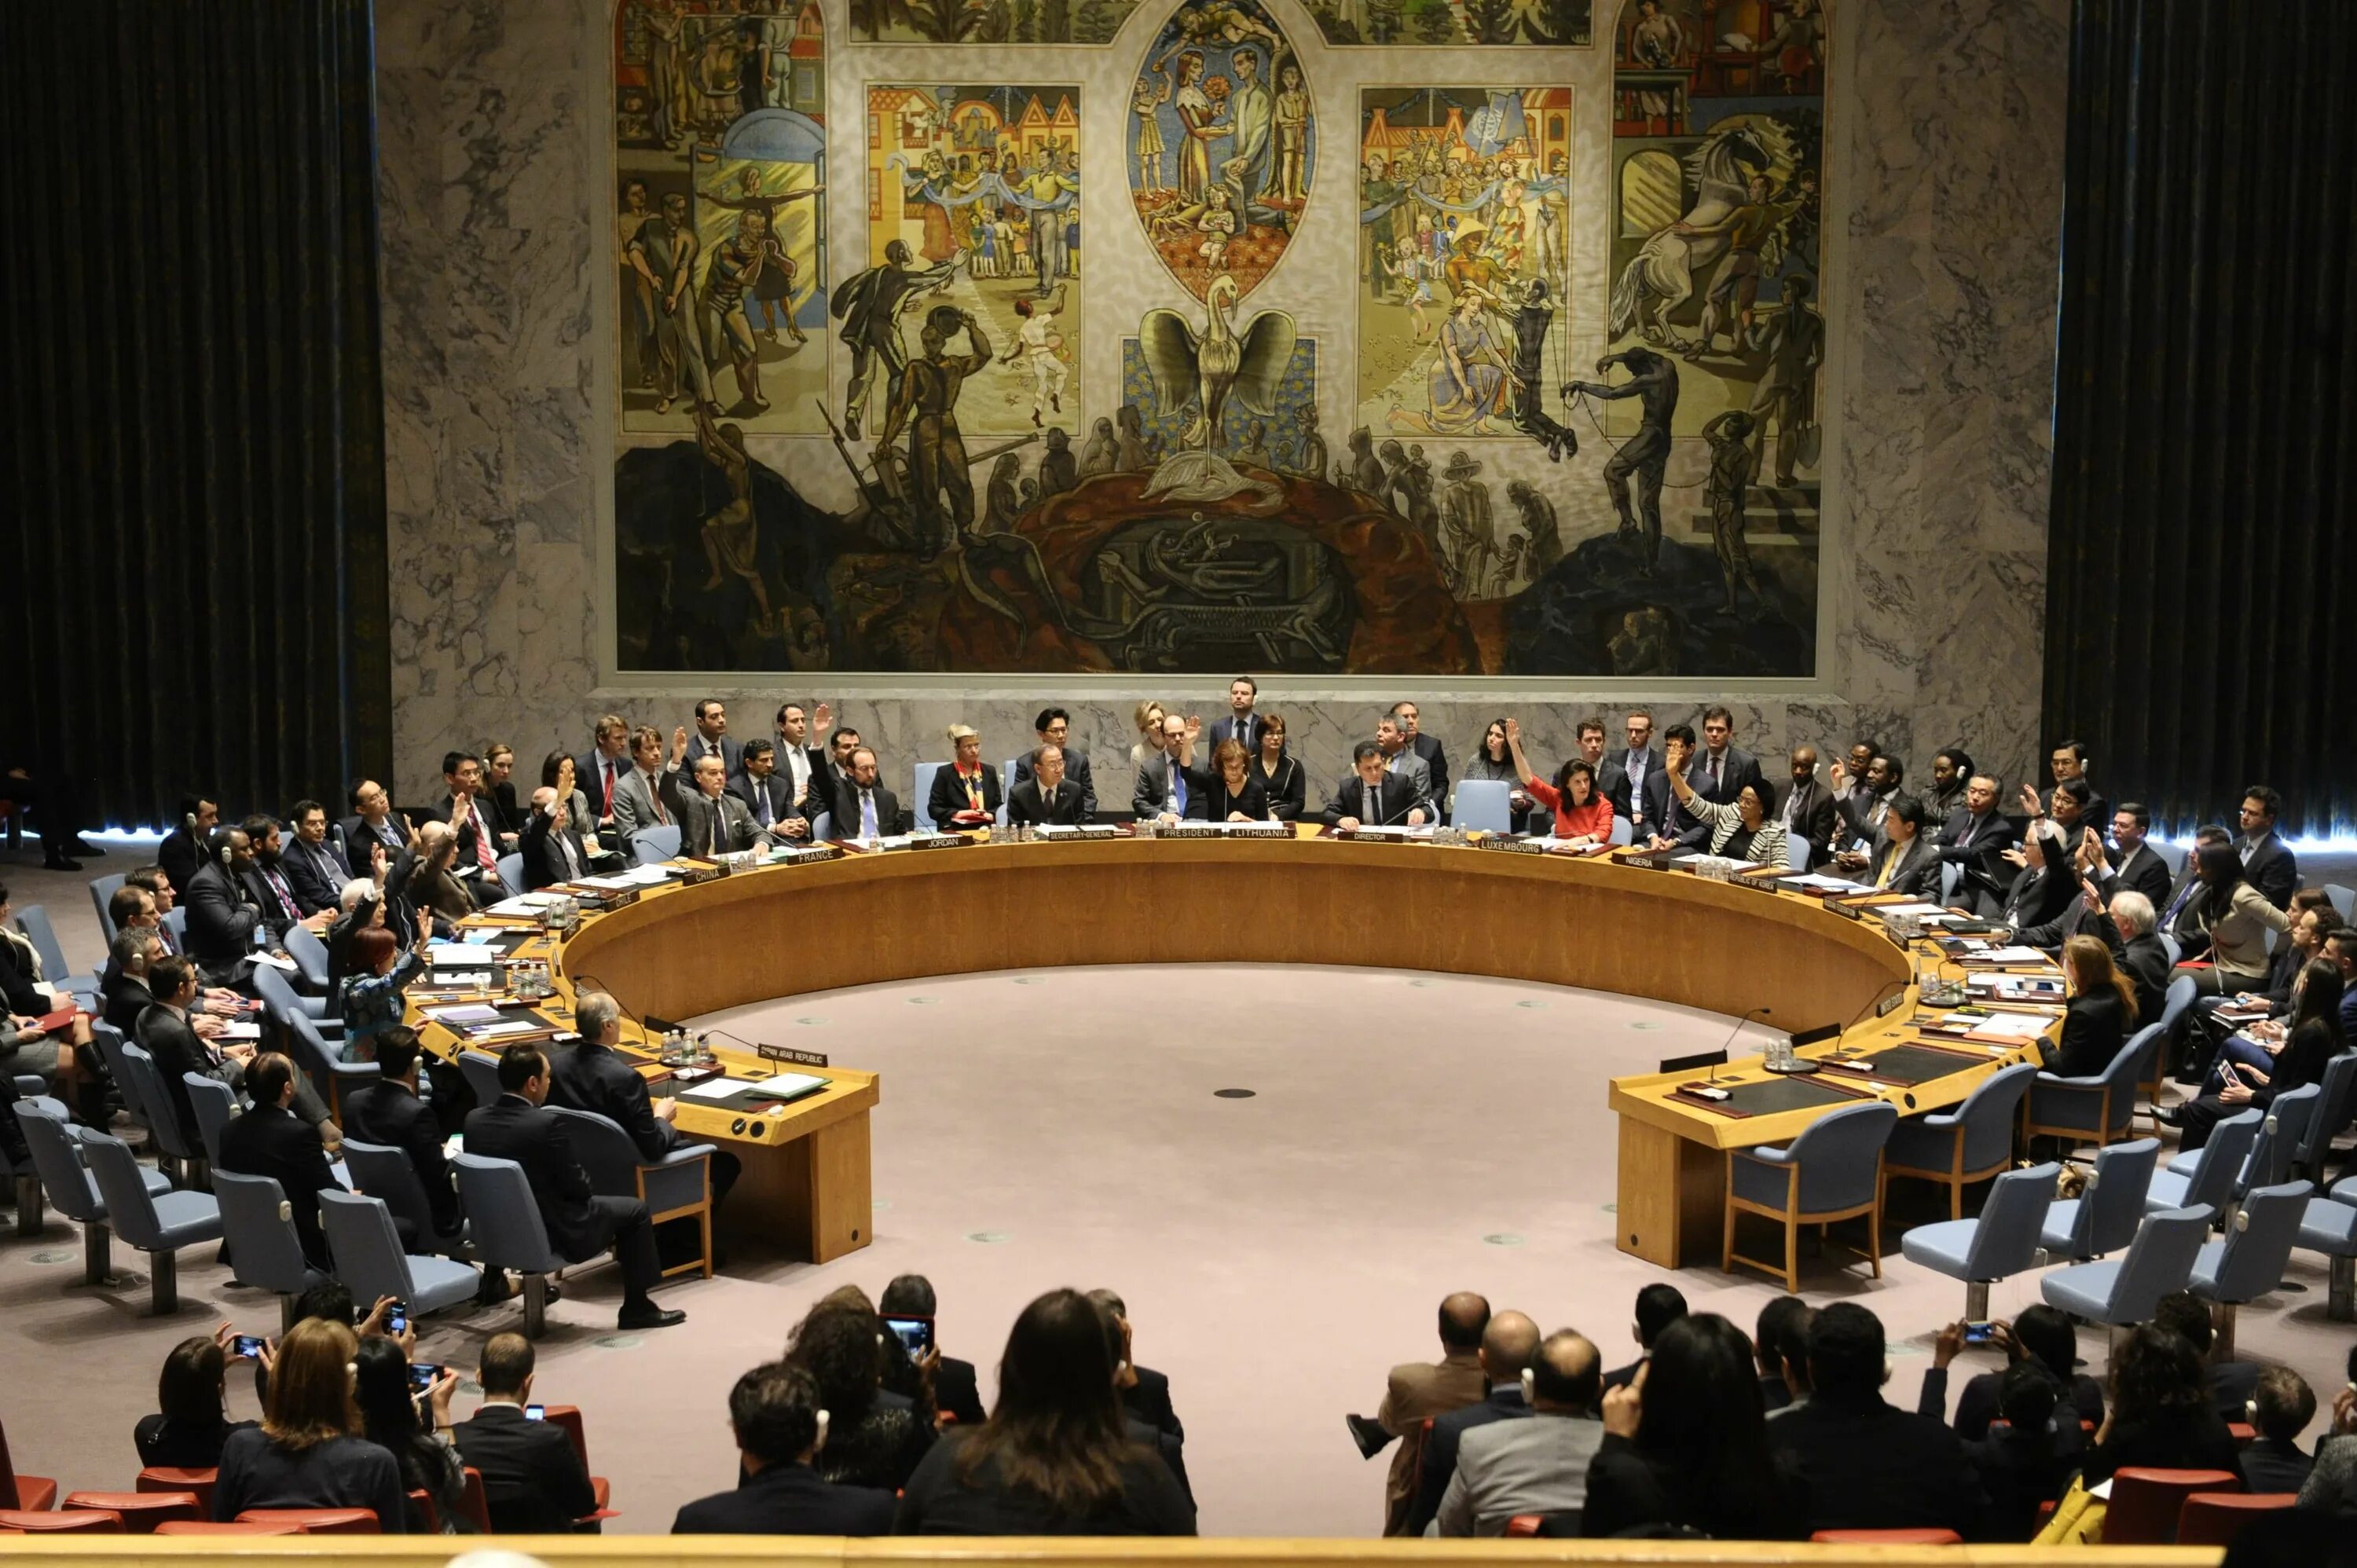 Зал оон. Зал совета безопасности ООН. Зал заседаний совета безопасности ООН. Зал заседаний Совбеза ООН. Заседание совета безопасности ООН.